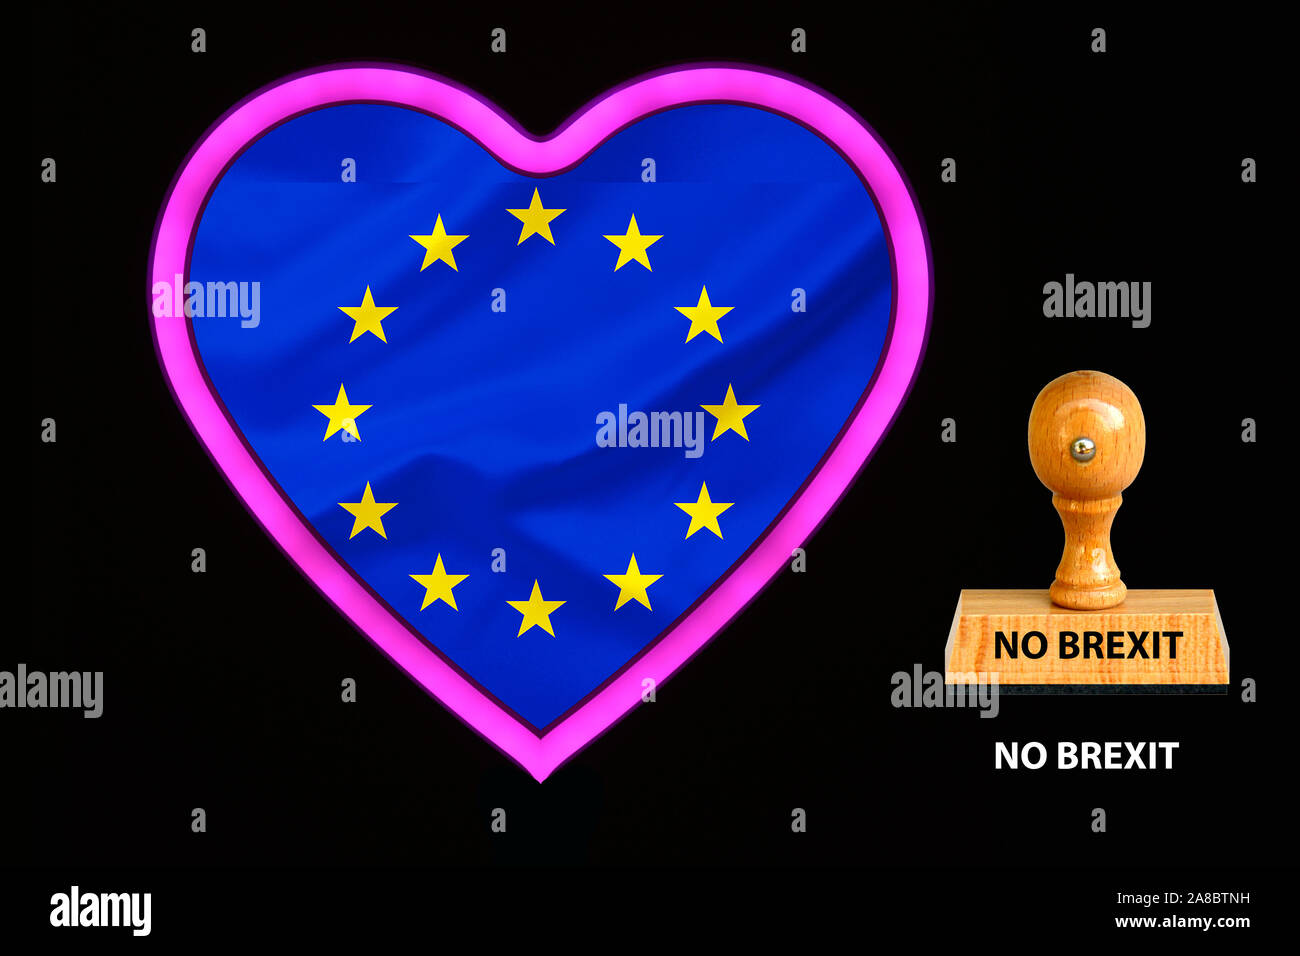 Herz, Pink, Neon, Licht, Europa, Europafahne,  Sterne, Gruendungsstaaten, No Brexit, Stock Photo